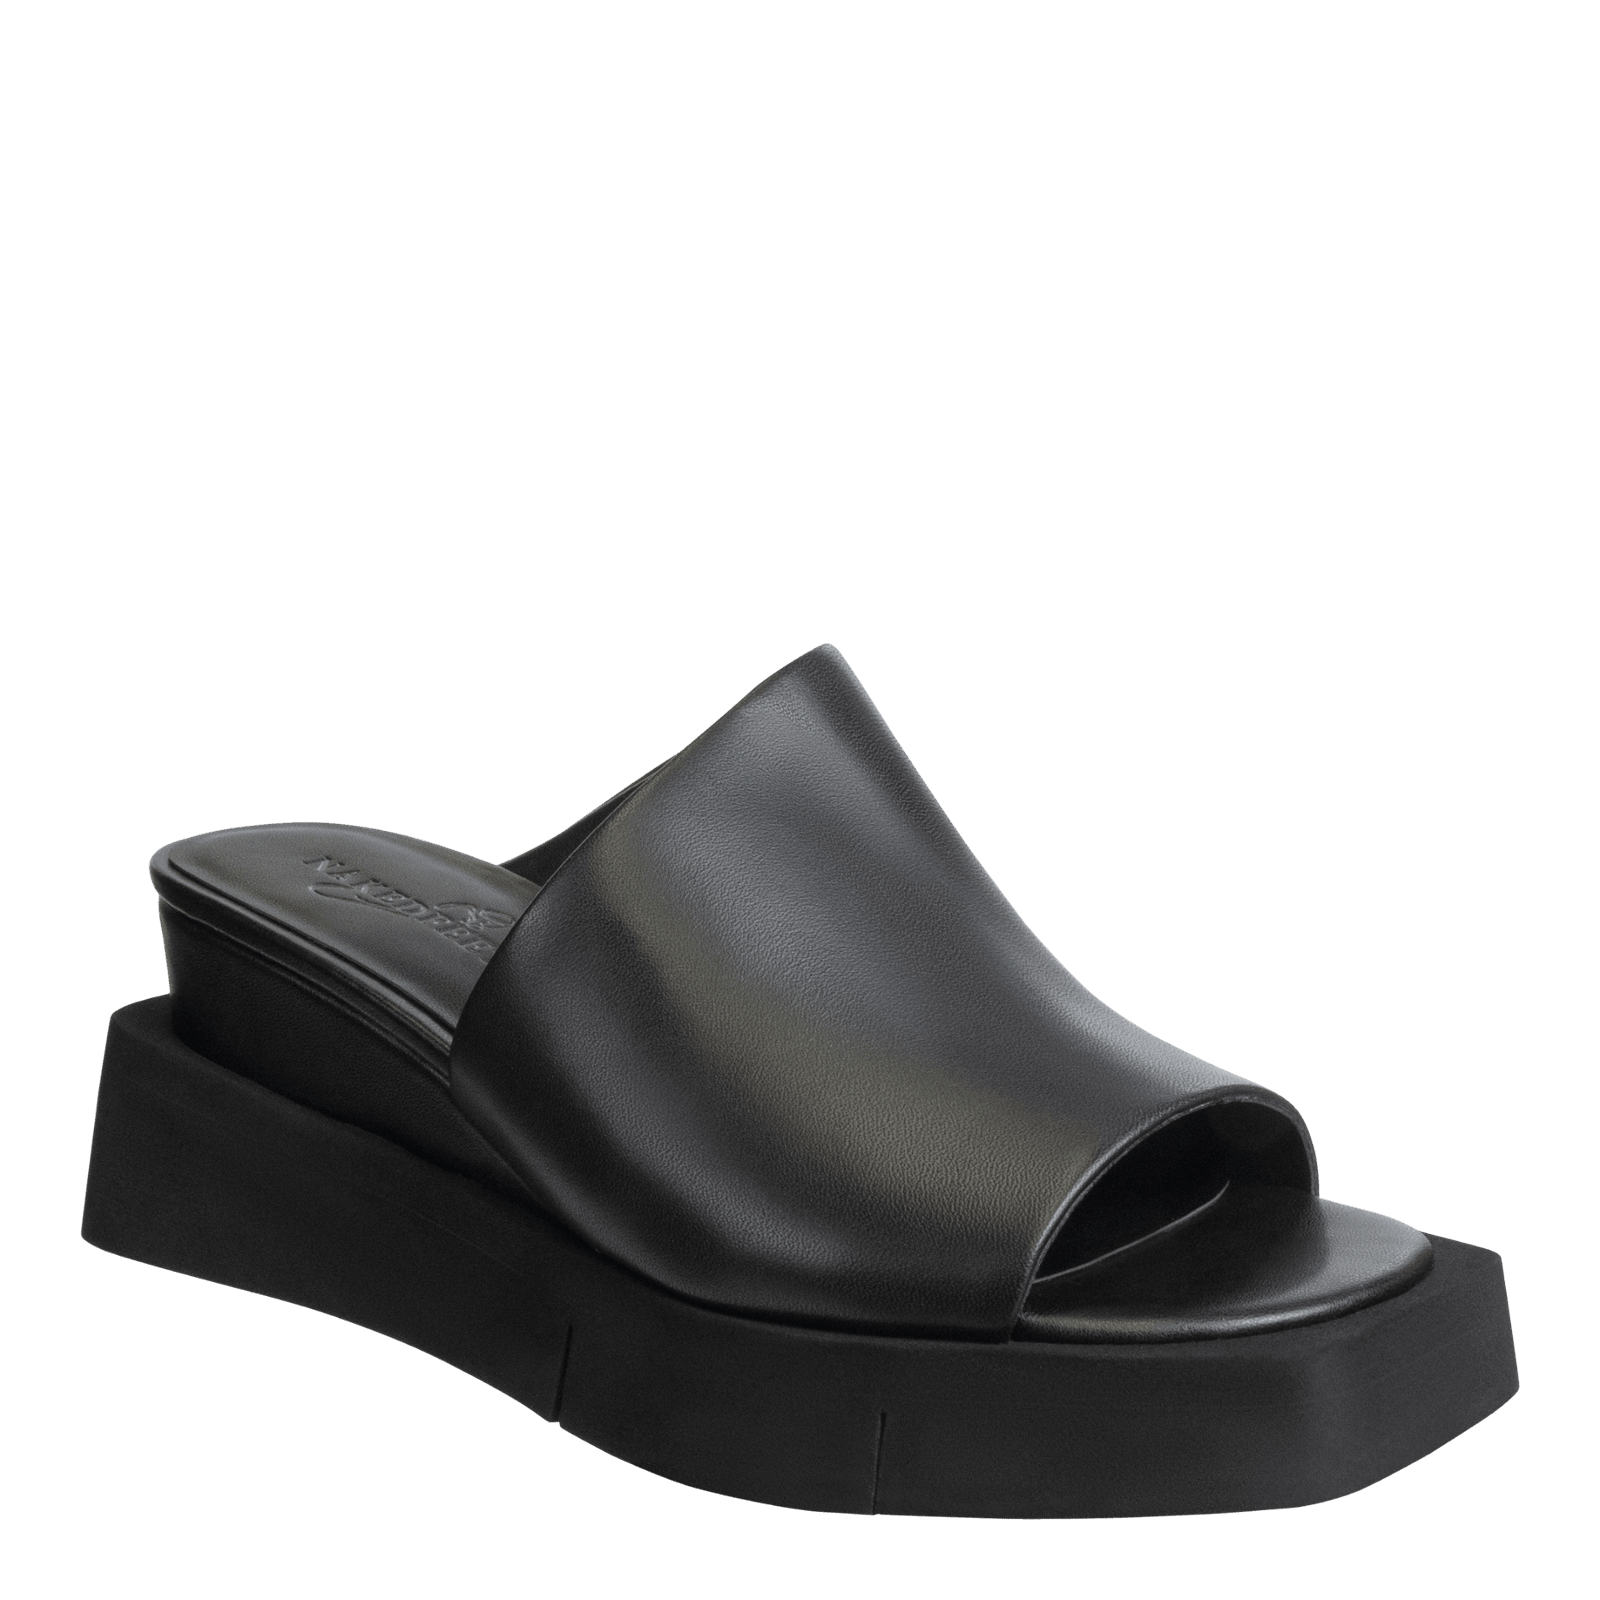 NAKED FEET - INFINITY in BLACK Wedge Sandals WOMEN FOOTWEAR NAKED FEET 